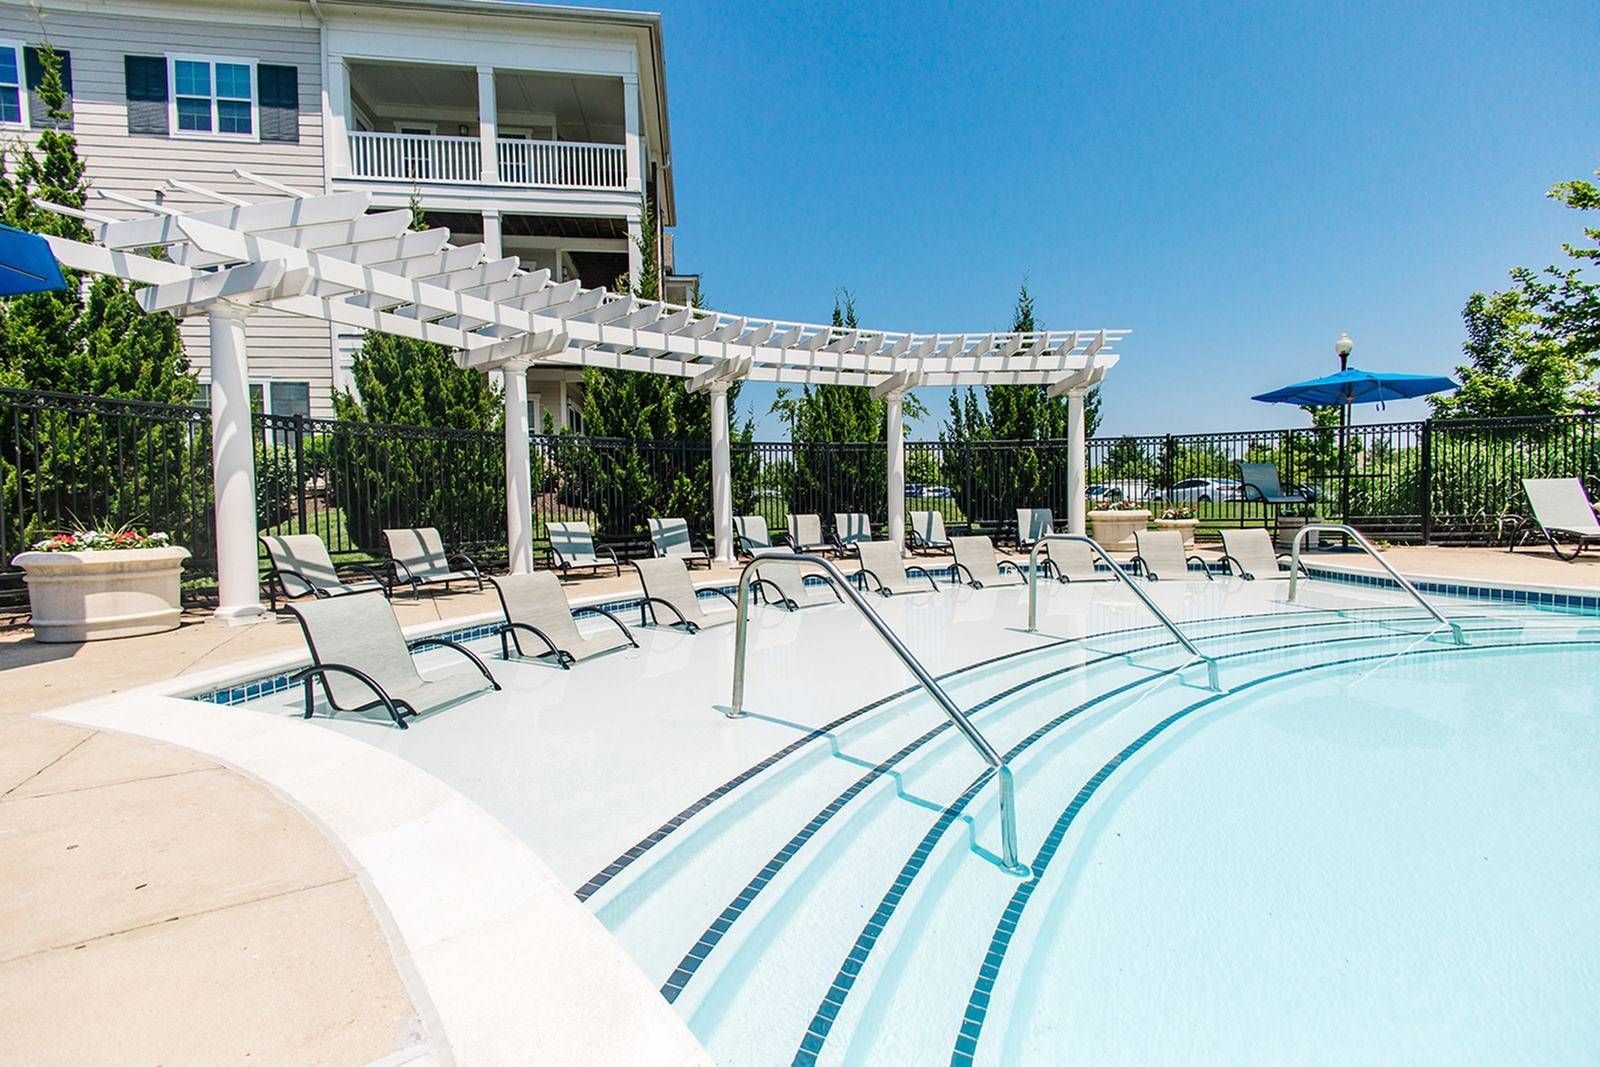 Settler's Landing apartment community resort-style pool.